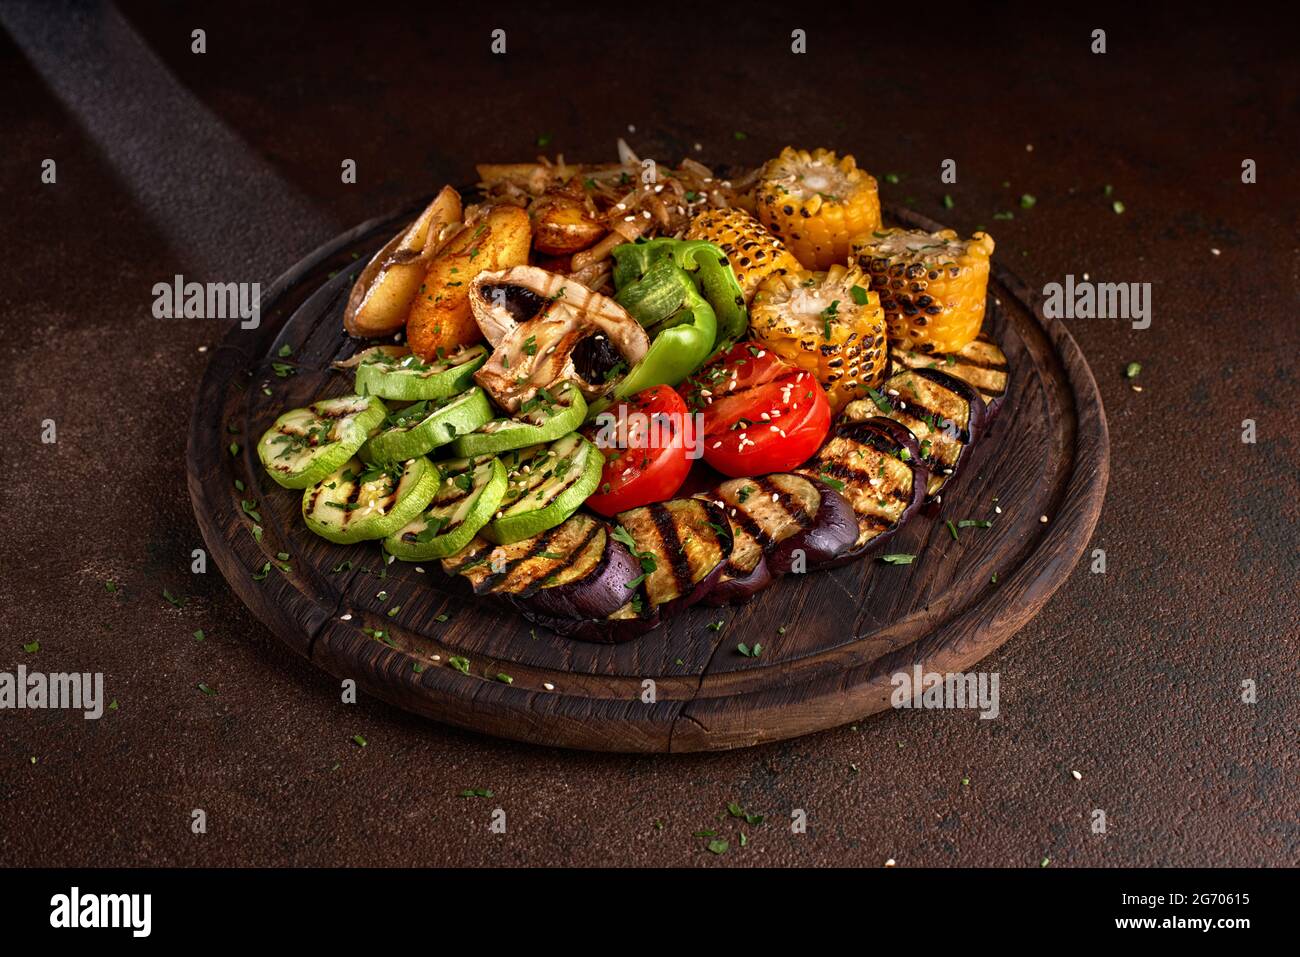 pancarta. una gran porción de verduras fritas de colores y setas en una bandeja de madera sobre un fondo oscuro. Foto de stock